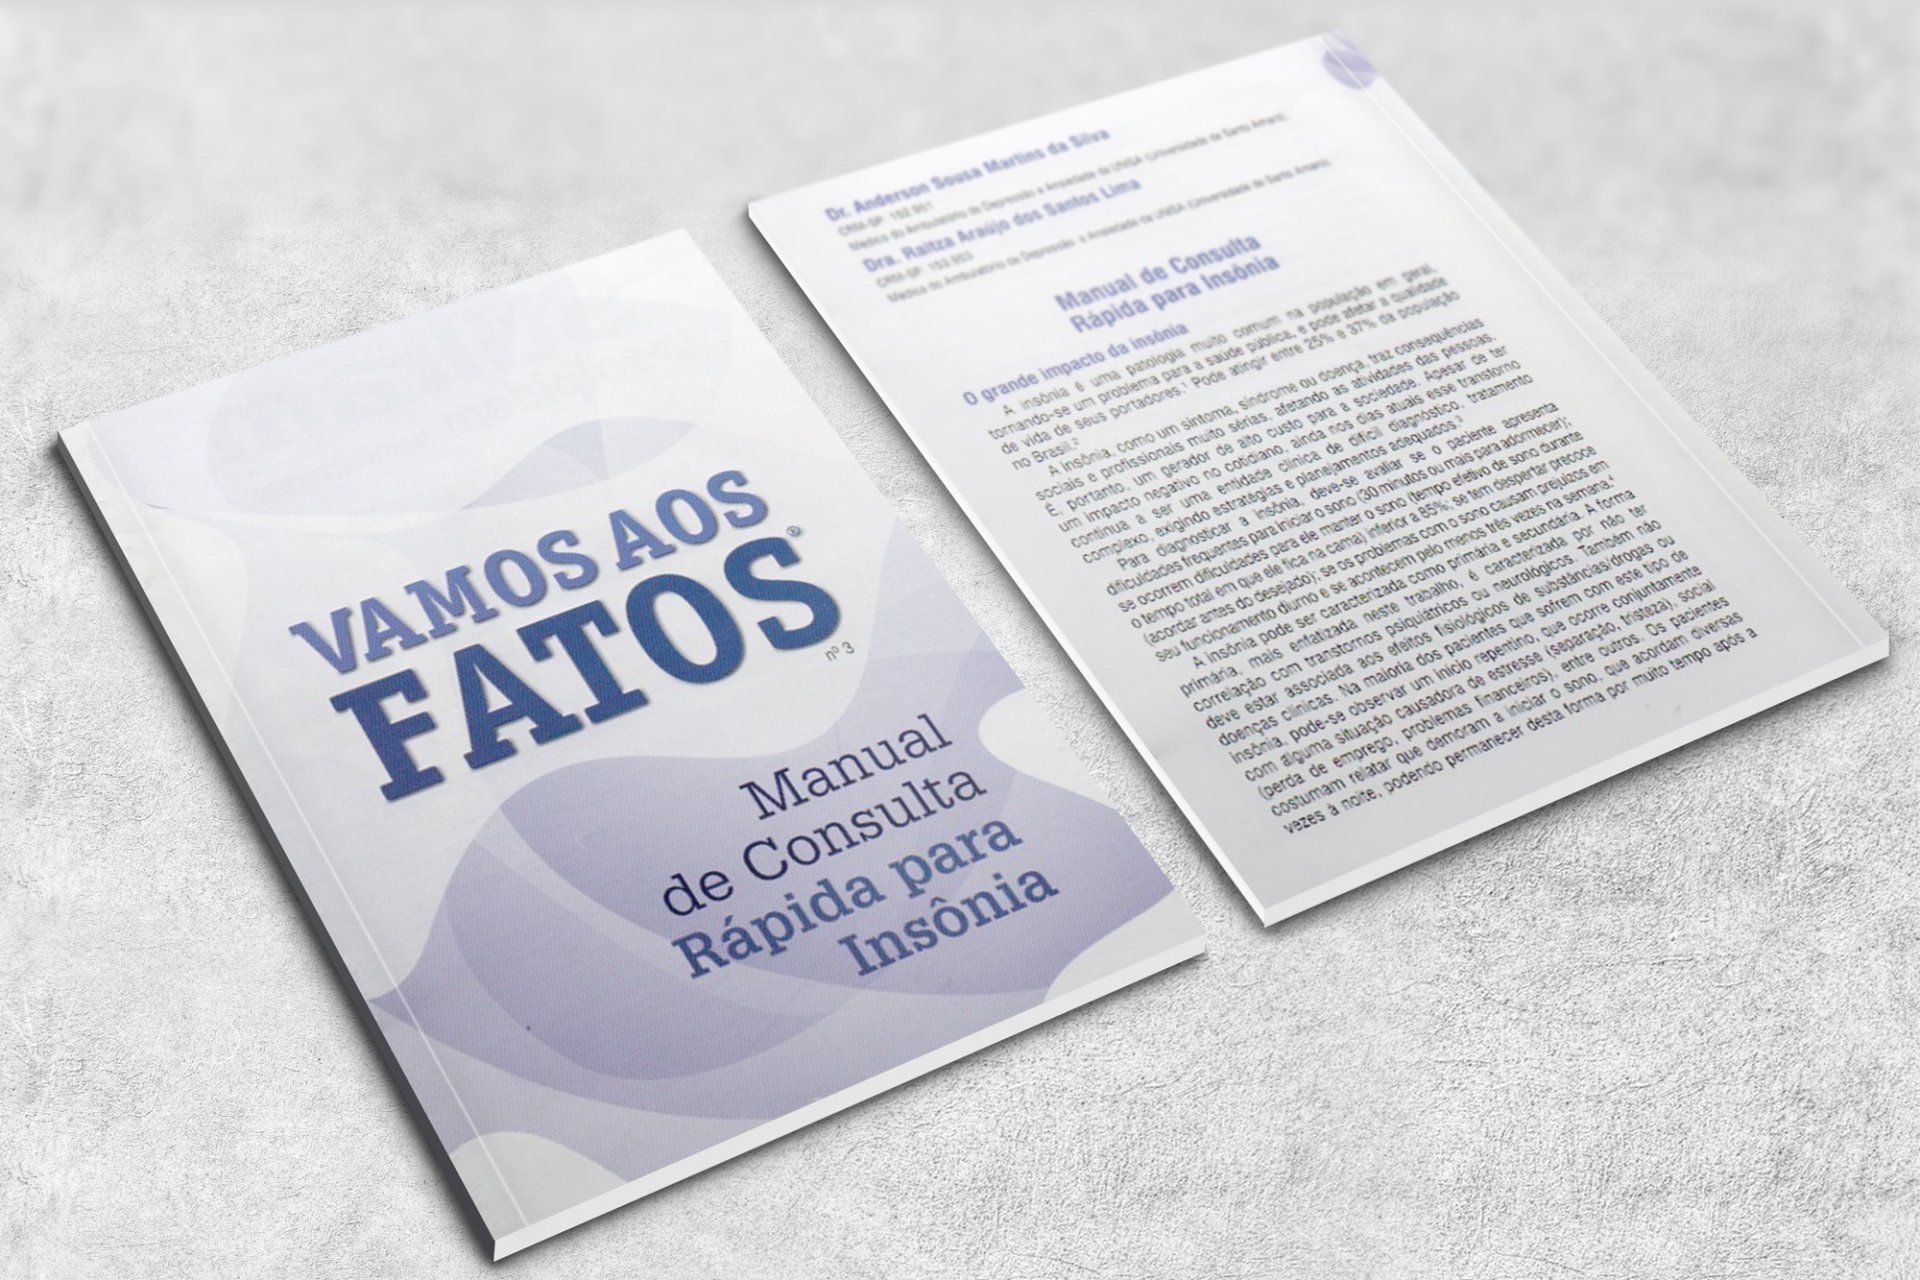 Publicações - Vamos aos Fatos – Manual de Consulta Rápida para Insônia